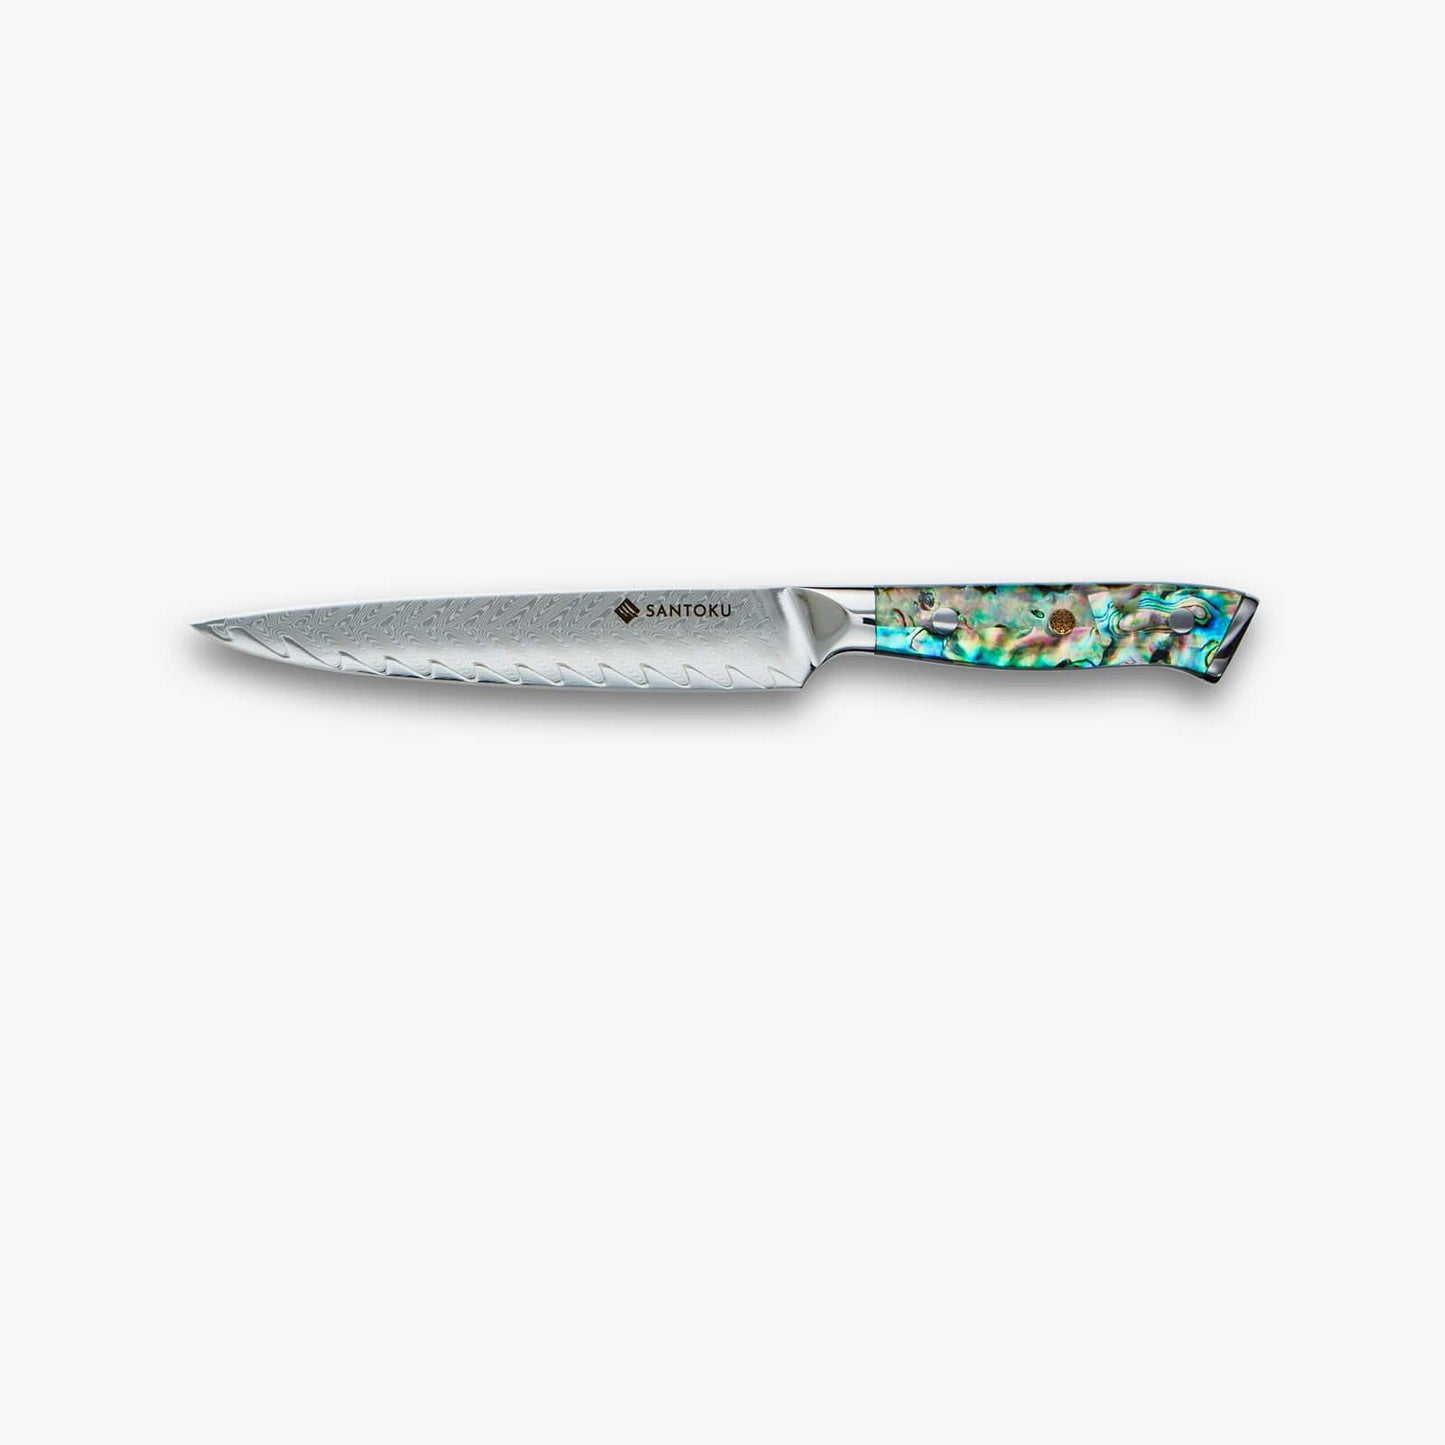 تشيكاشي (ちかし) سكين دمشق الفولاذي بمقبض أذن البحر